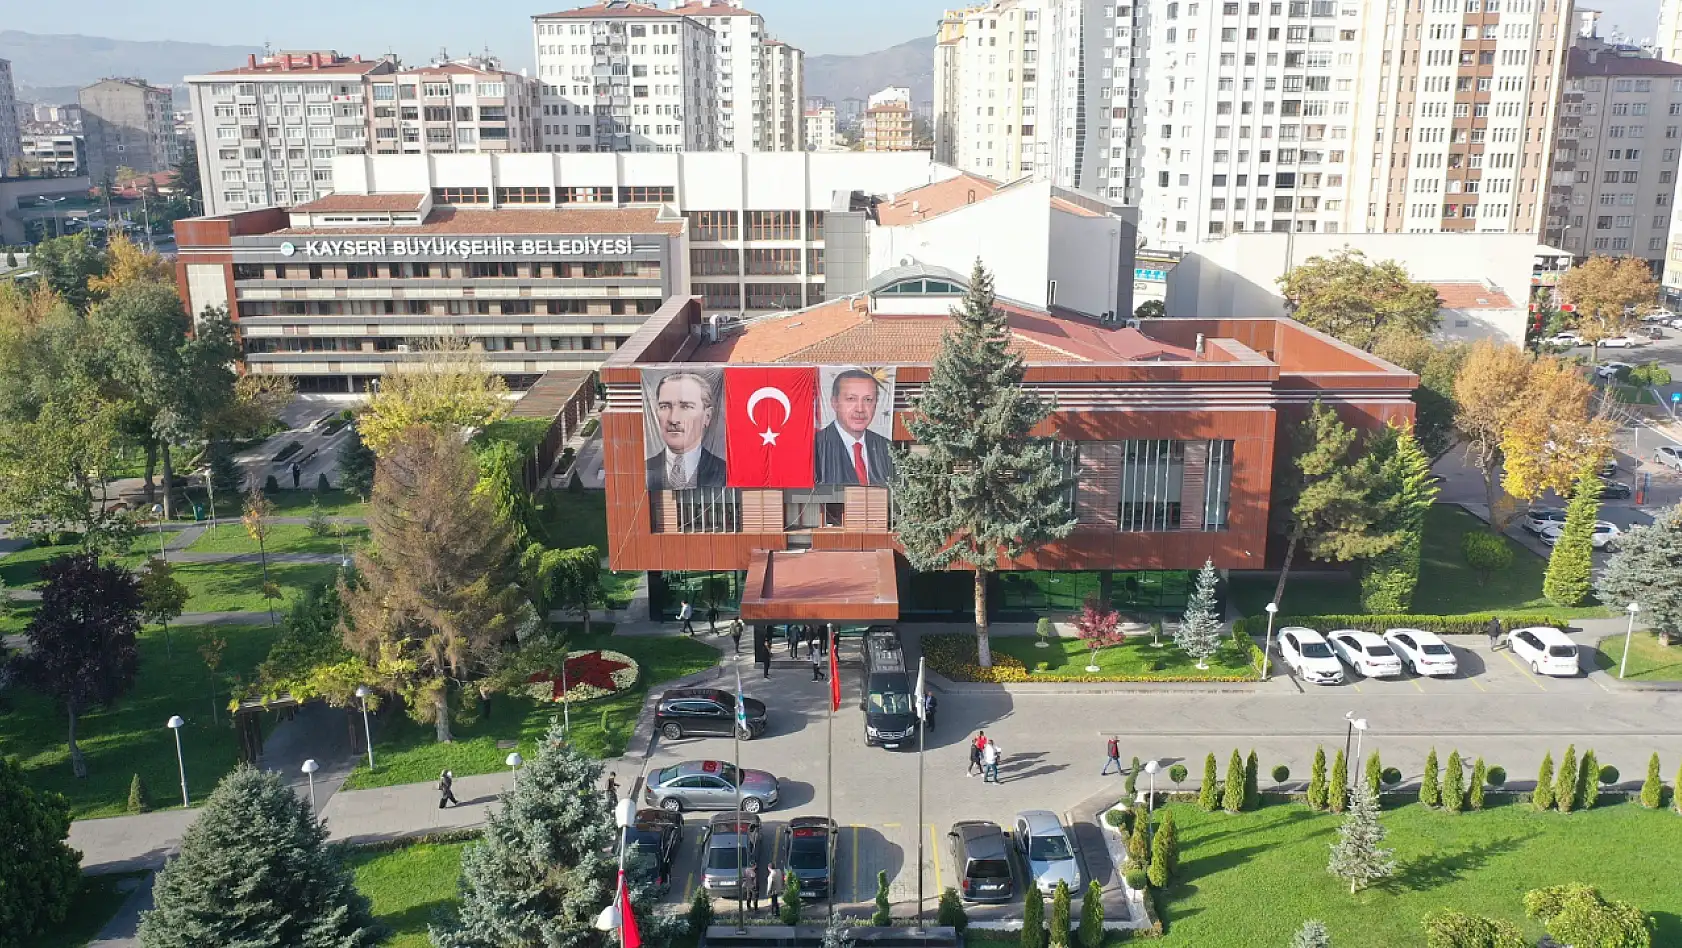 'Cumhurbaşkanı Kayseri Büyükşehir Belediyesi'ni verseydi?'